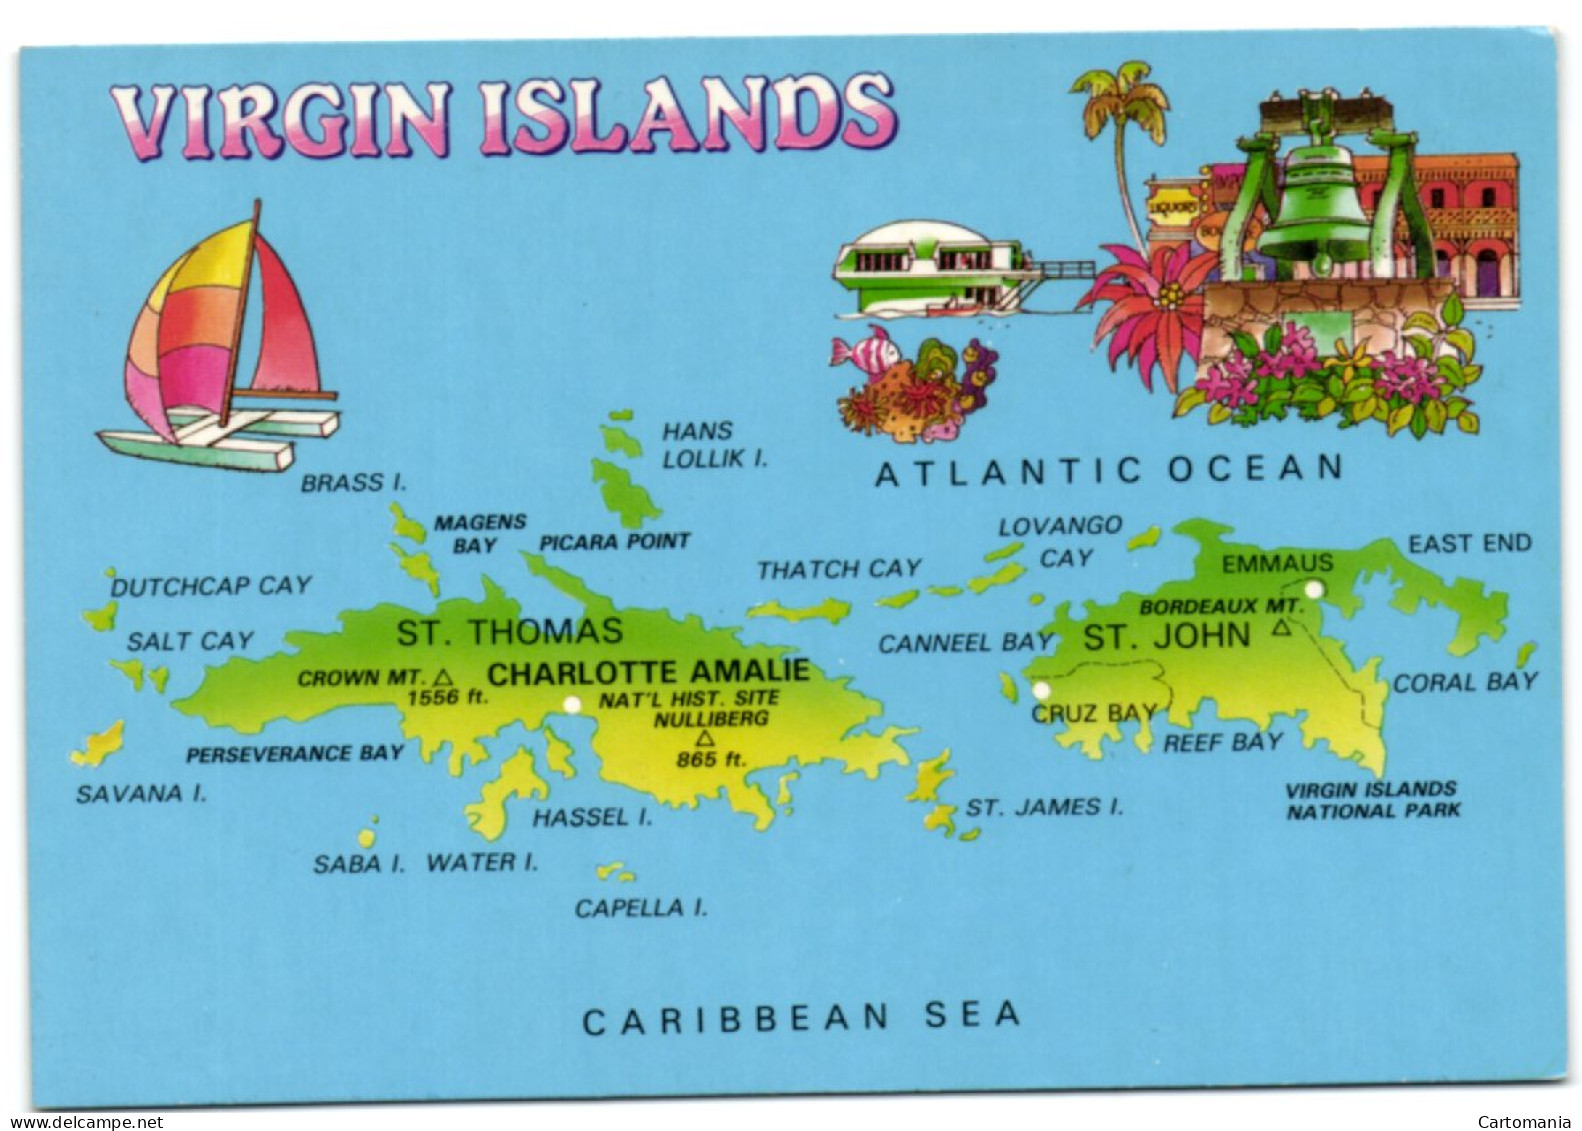 Virgin Islands - Jungferninseln, Britische